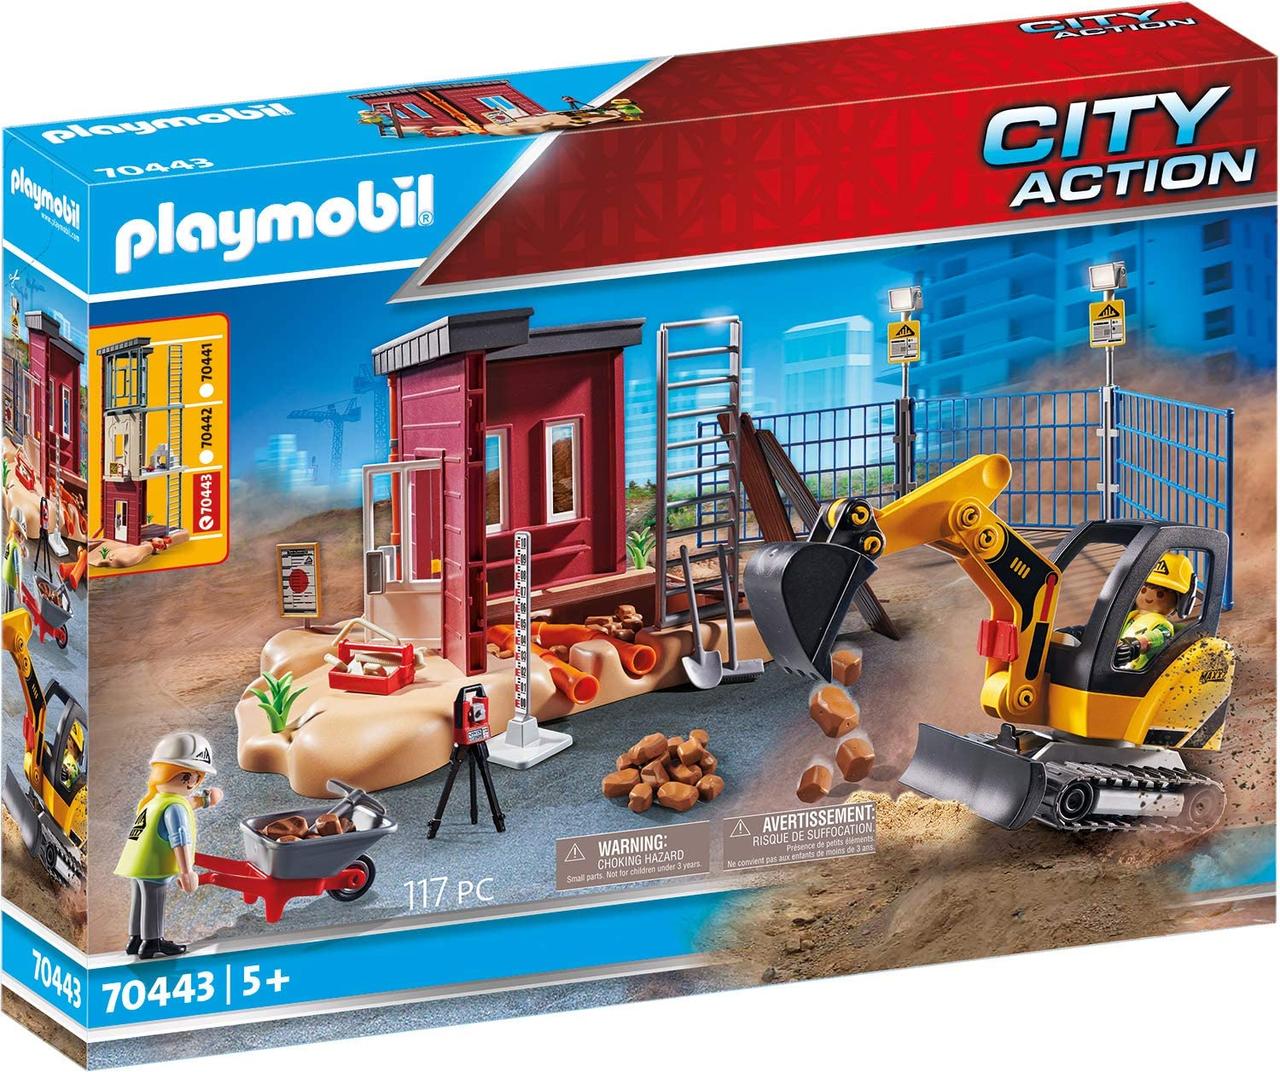 Плеймобил 70443 міні-екскаватор з будівельною секцією Playmobil Action City, фото 1